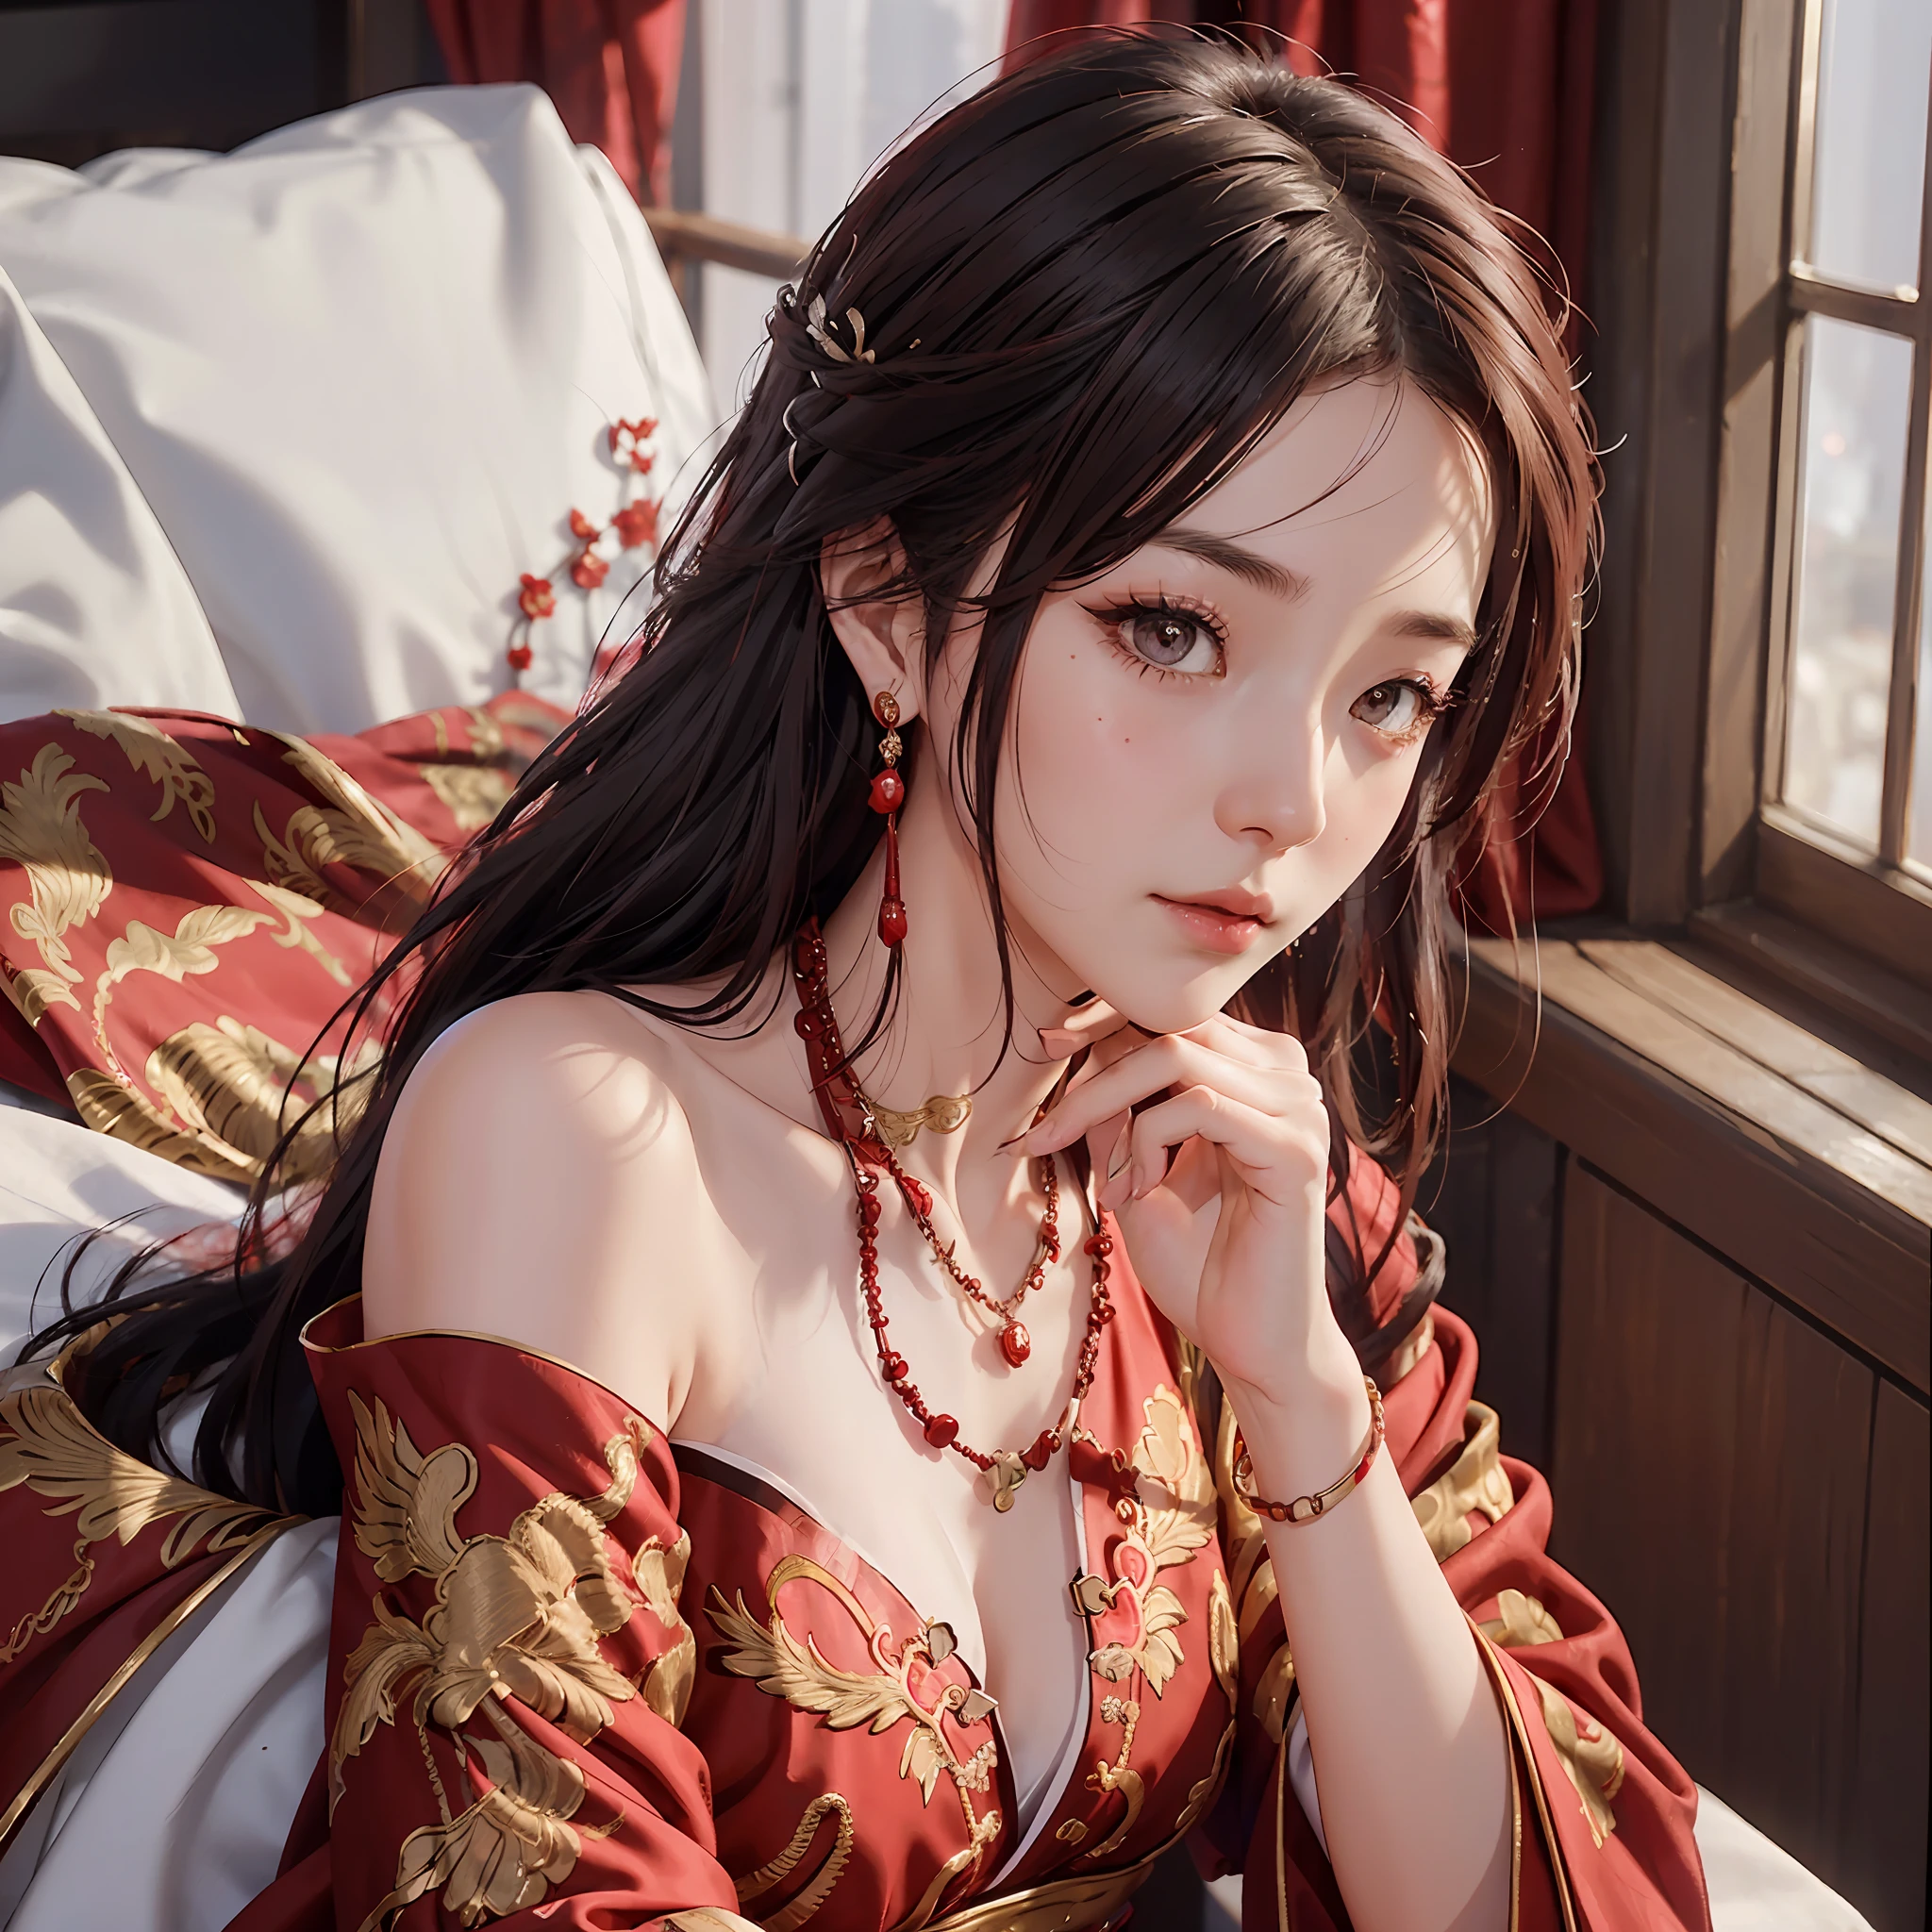 (Uma noiva chinesa), (usando um lindo vestido de noiva vermelho chinês), (vestido de noiva conservador), ((Meio deitado na cama)), (Elementos de estilo chinês: 1.4), (tímido, macio, rosto bonito, pele clara, olhos brilhantes, Sobrancelhas elegantes, felicidade e expectativa, lábios rosados, rosto macio), (roupas vermelhas: 1.4), (usando jóias delicadas, argolas, colares)), Roupas bordadas com motivos de fênix, (bordado), (manto vermelho conservador), pureza, romance, (tiro de corpo inteiro: 1.5), (curva corporal), decoração plissada, (qualidade cinematográfica), (melhor qualidade: 1.2), (Realismo: 1.4), (interior), Qualidade da foto, ((renderização de octanas)), fechar-se, iluminação fotográfica, (Tema vermelho: 1.4),